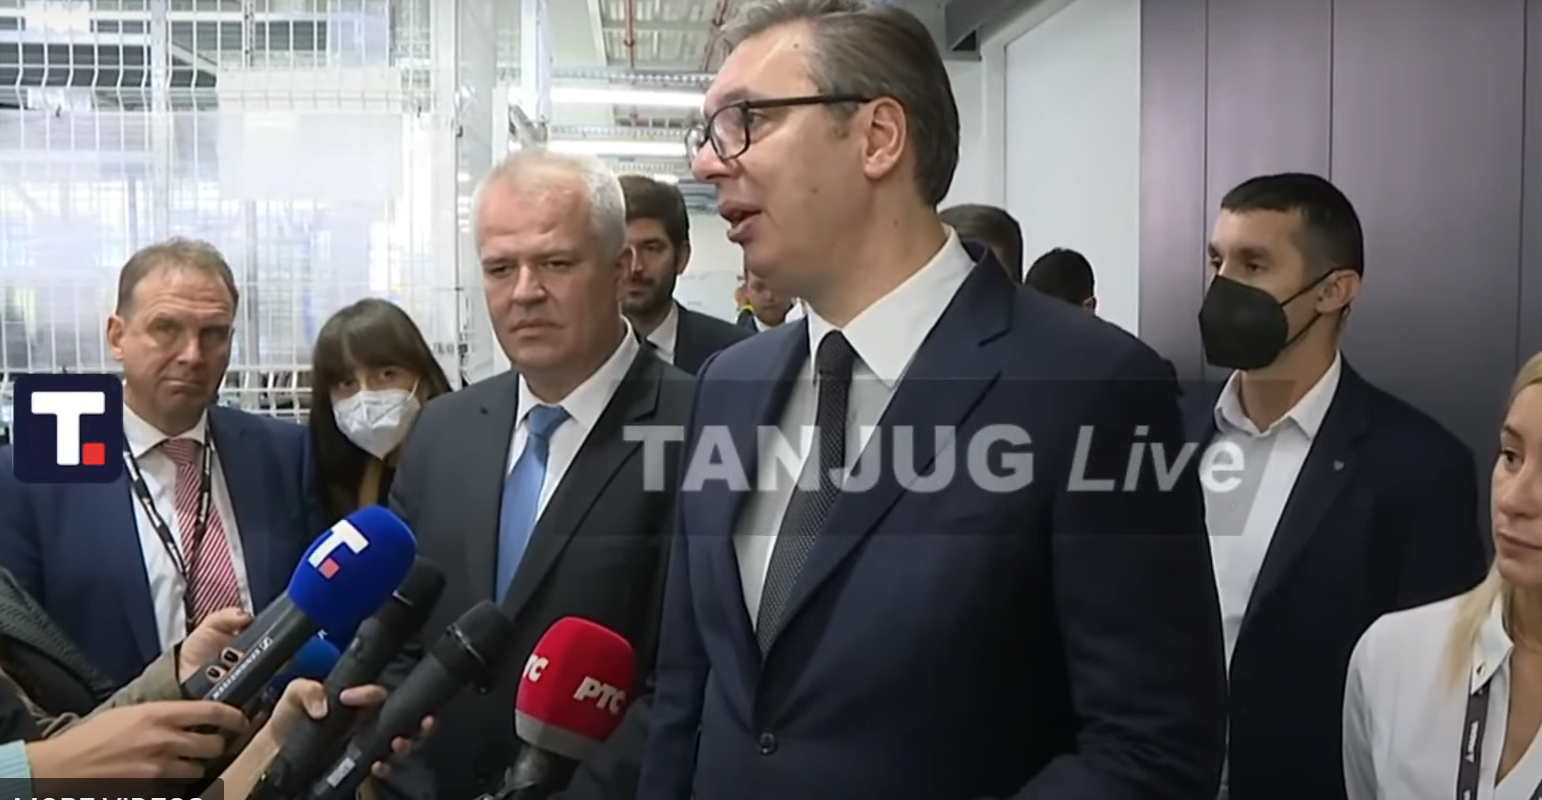 Vučić u Aleksincu, foto: Tanjug live, preuzeto iz video priloga